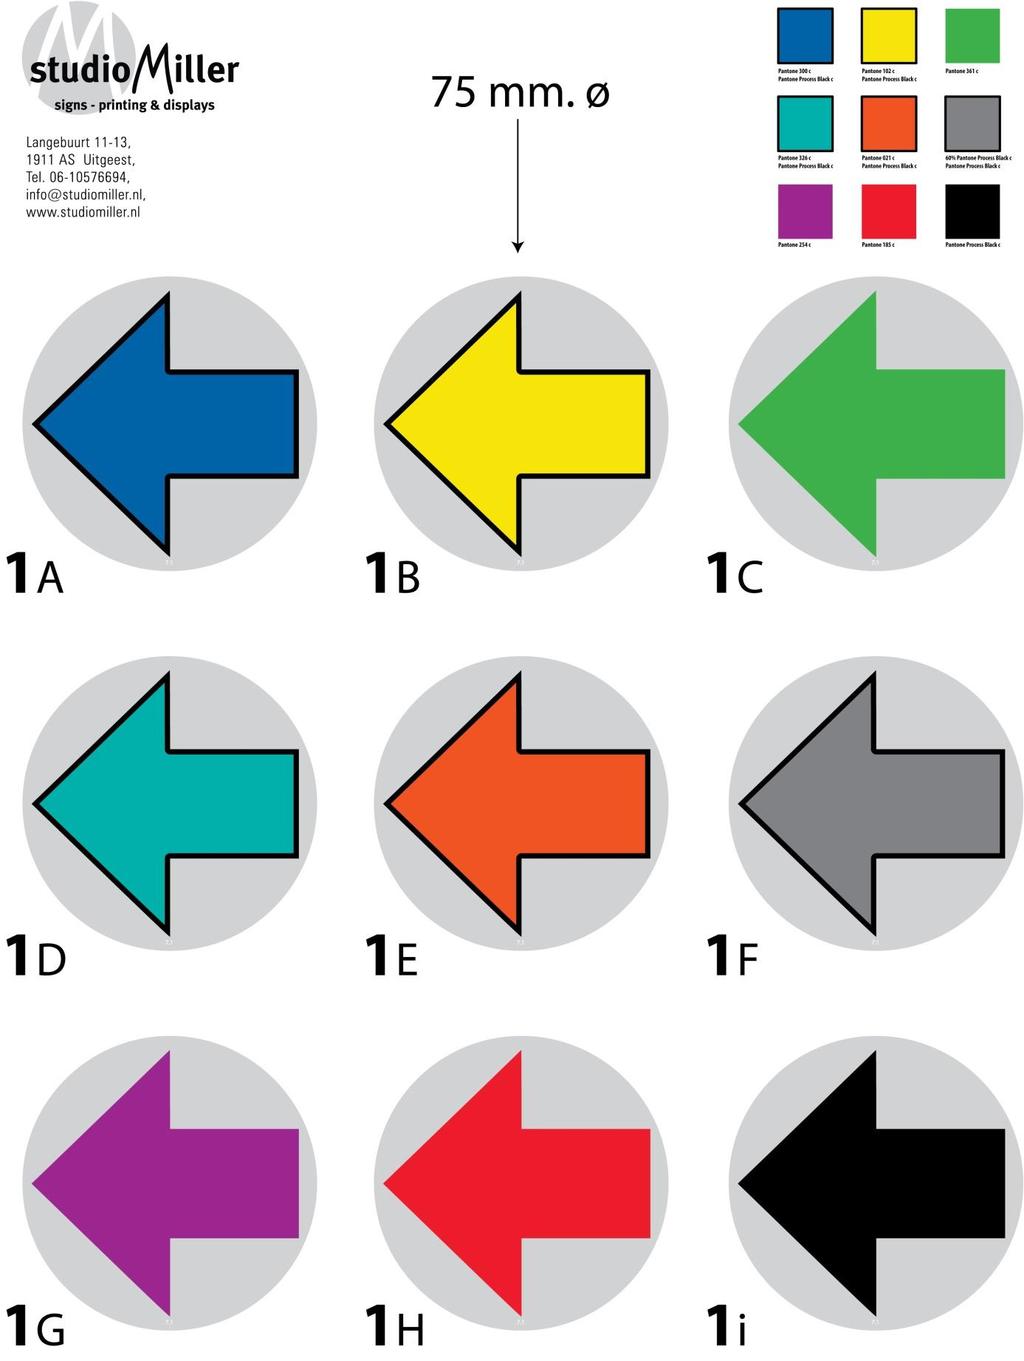 Pijlstickers Ø 75 mm, met de standaard routekleuren: - Primair te kiezen voor: rood, blauw, geel - Secundair te kiezen voor: paars, groen, oranje - Alleen indien nodig kiezen voor: turquoise, zwart -